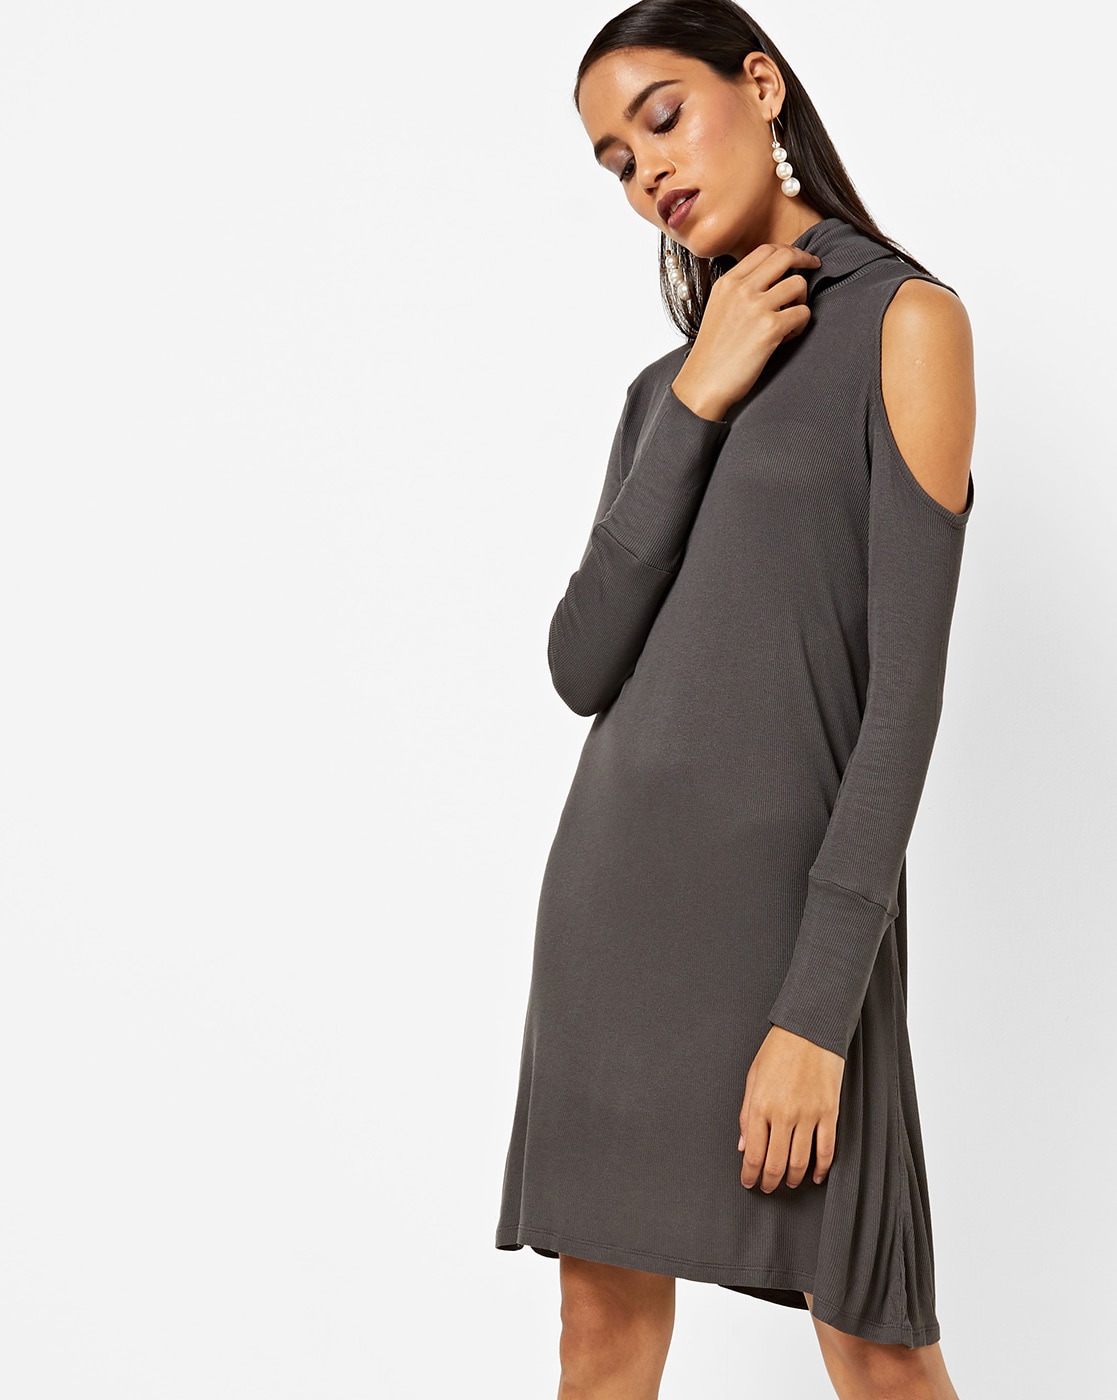 grey cold shoulder dress